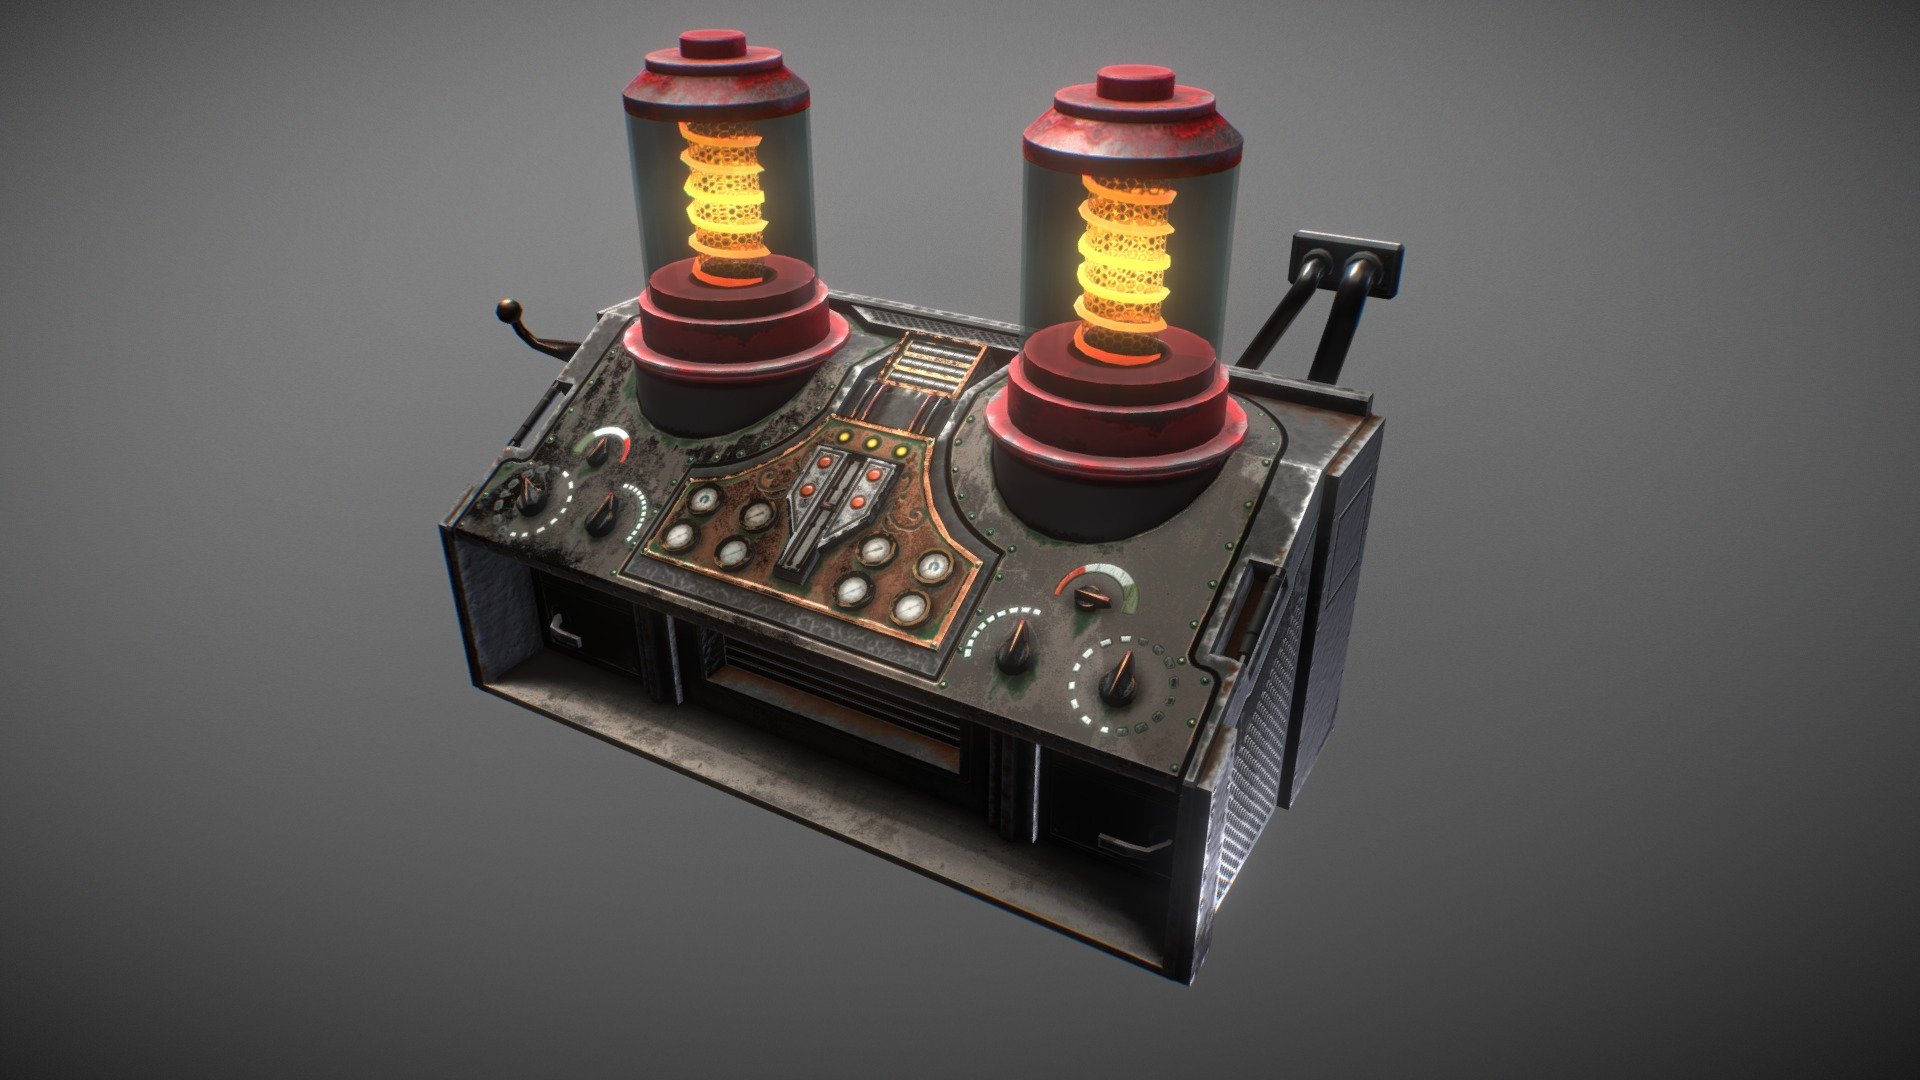 Laboratory Equipment 2 - 3D model by Dmitriy Dryzhak (@arvart.lit) 3d model